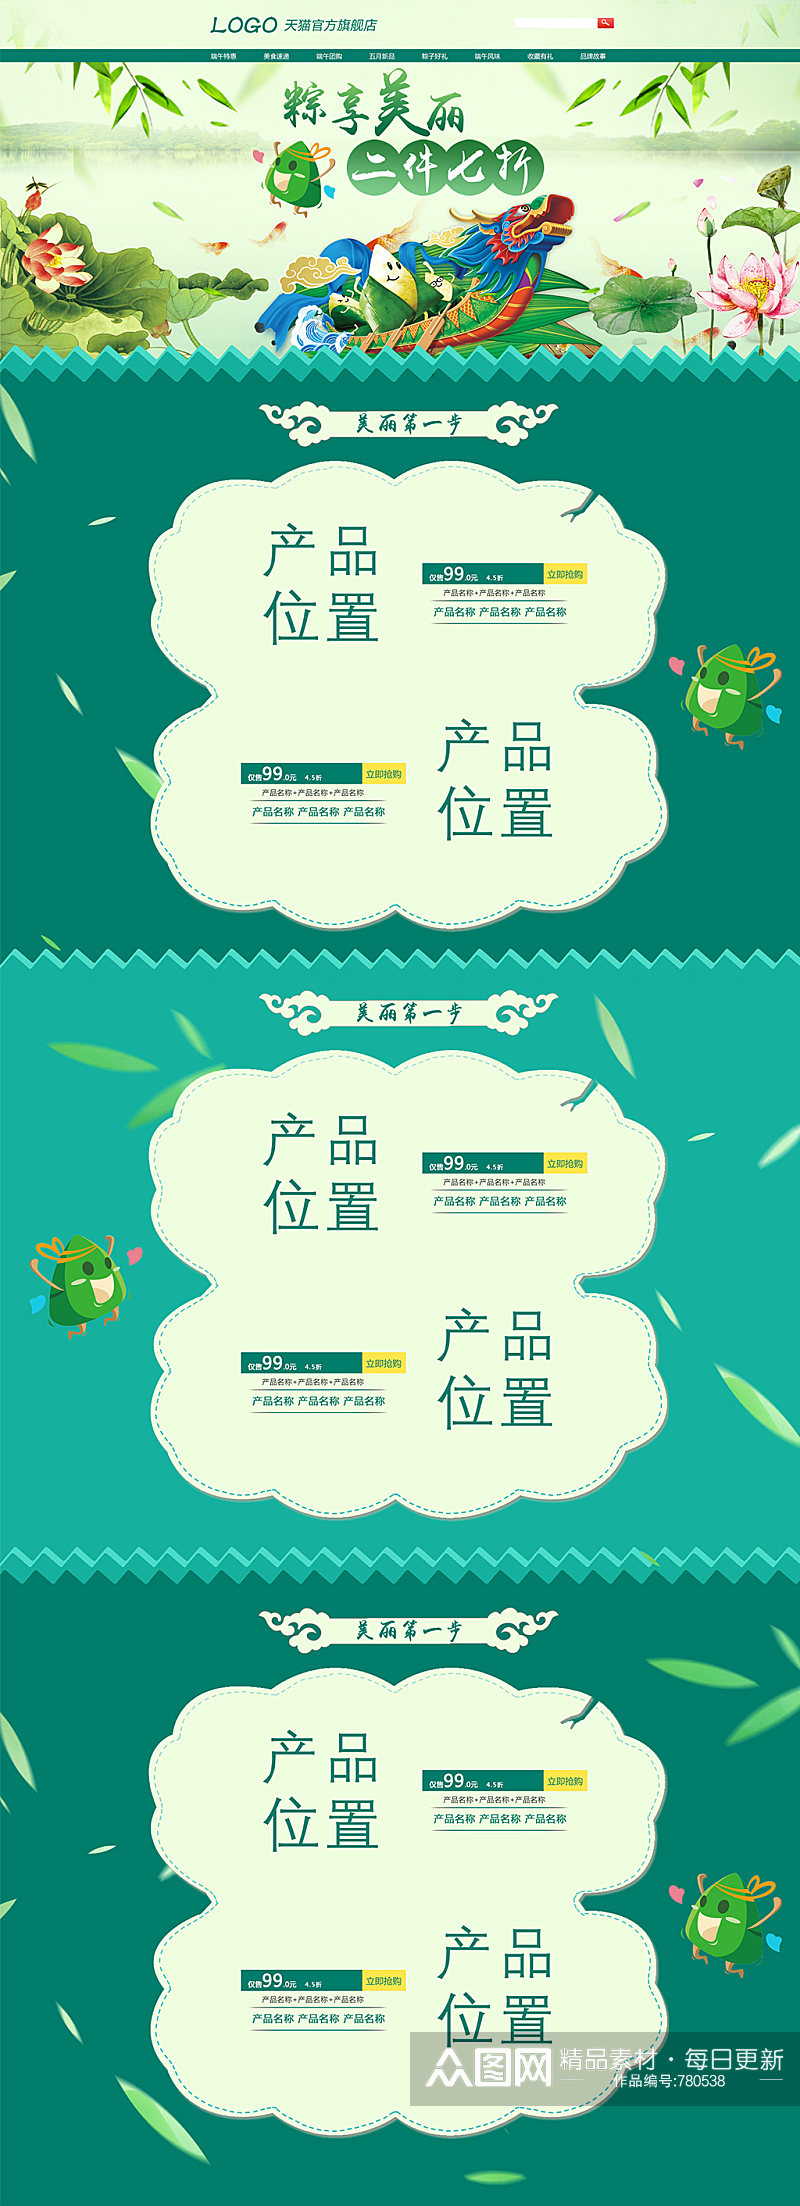 粽子节端午节首页模板设计天猫淘宝节日页面素材